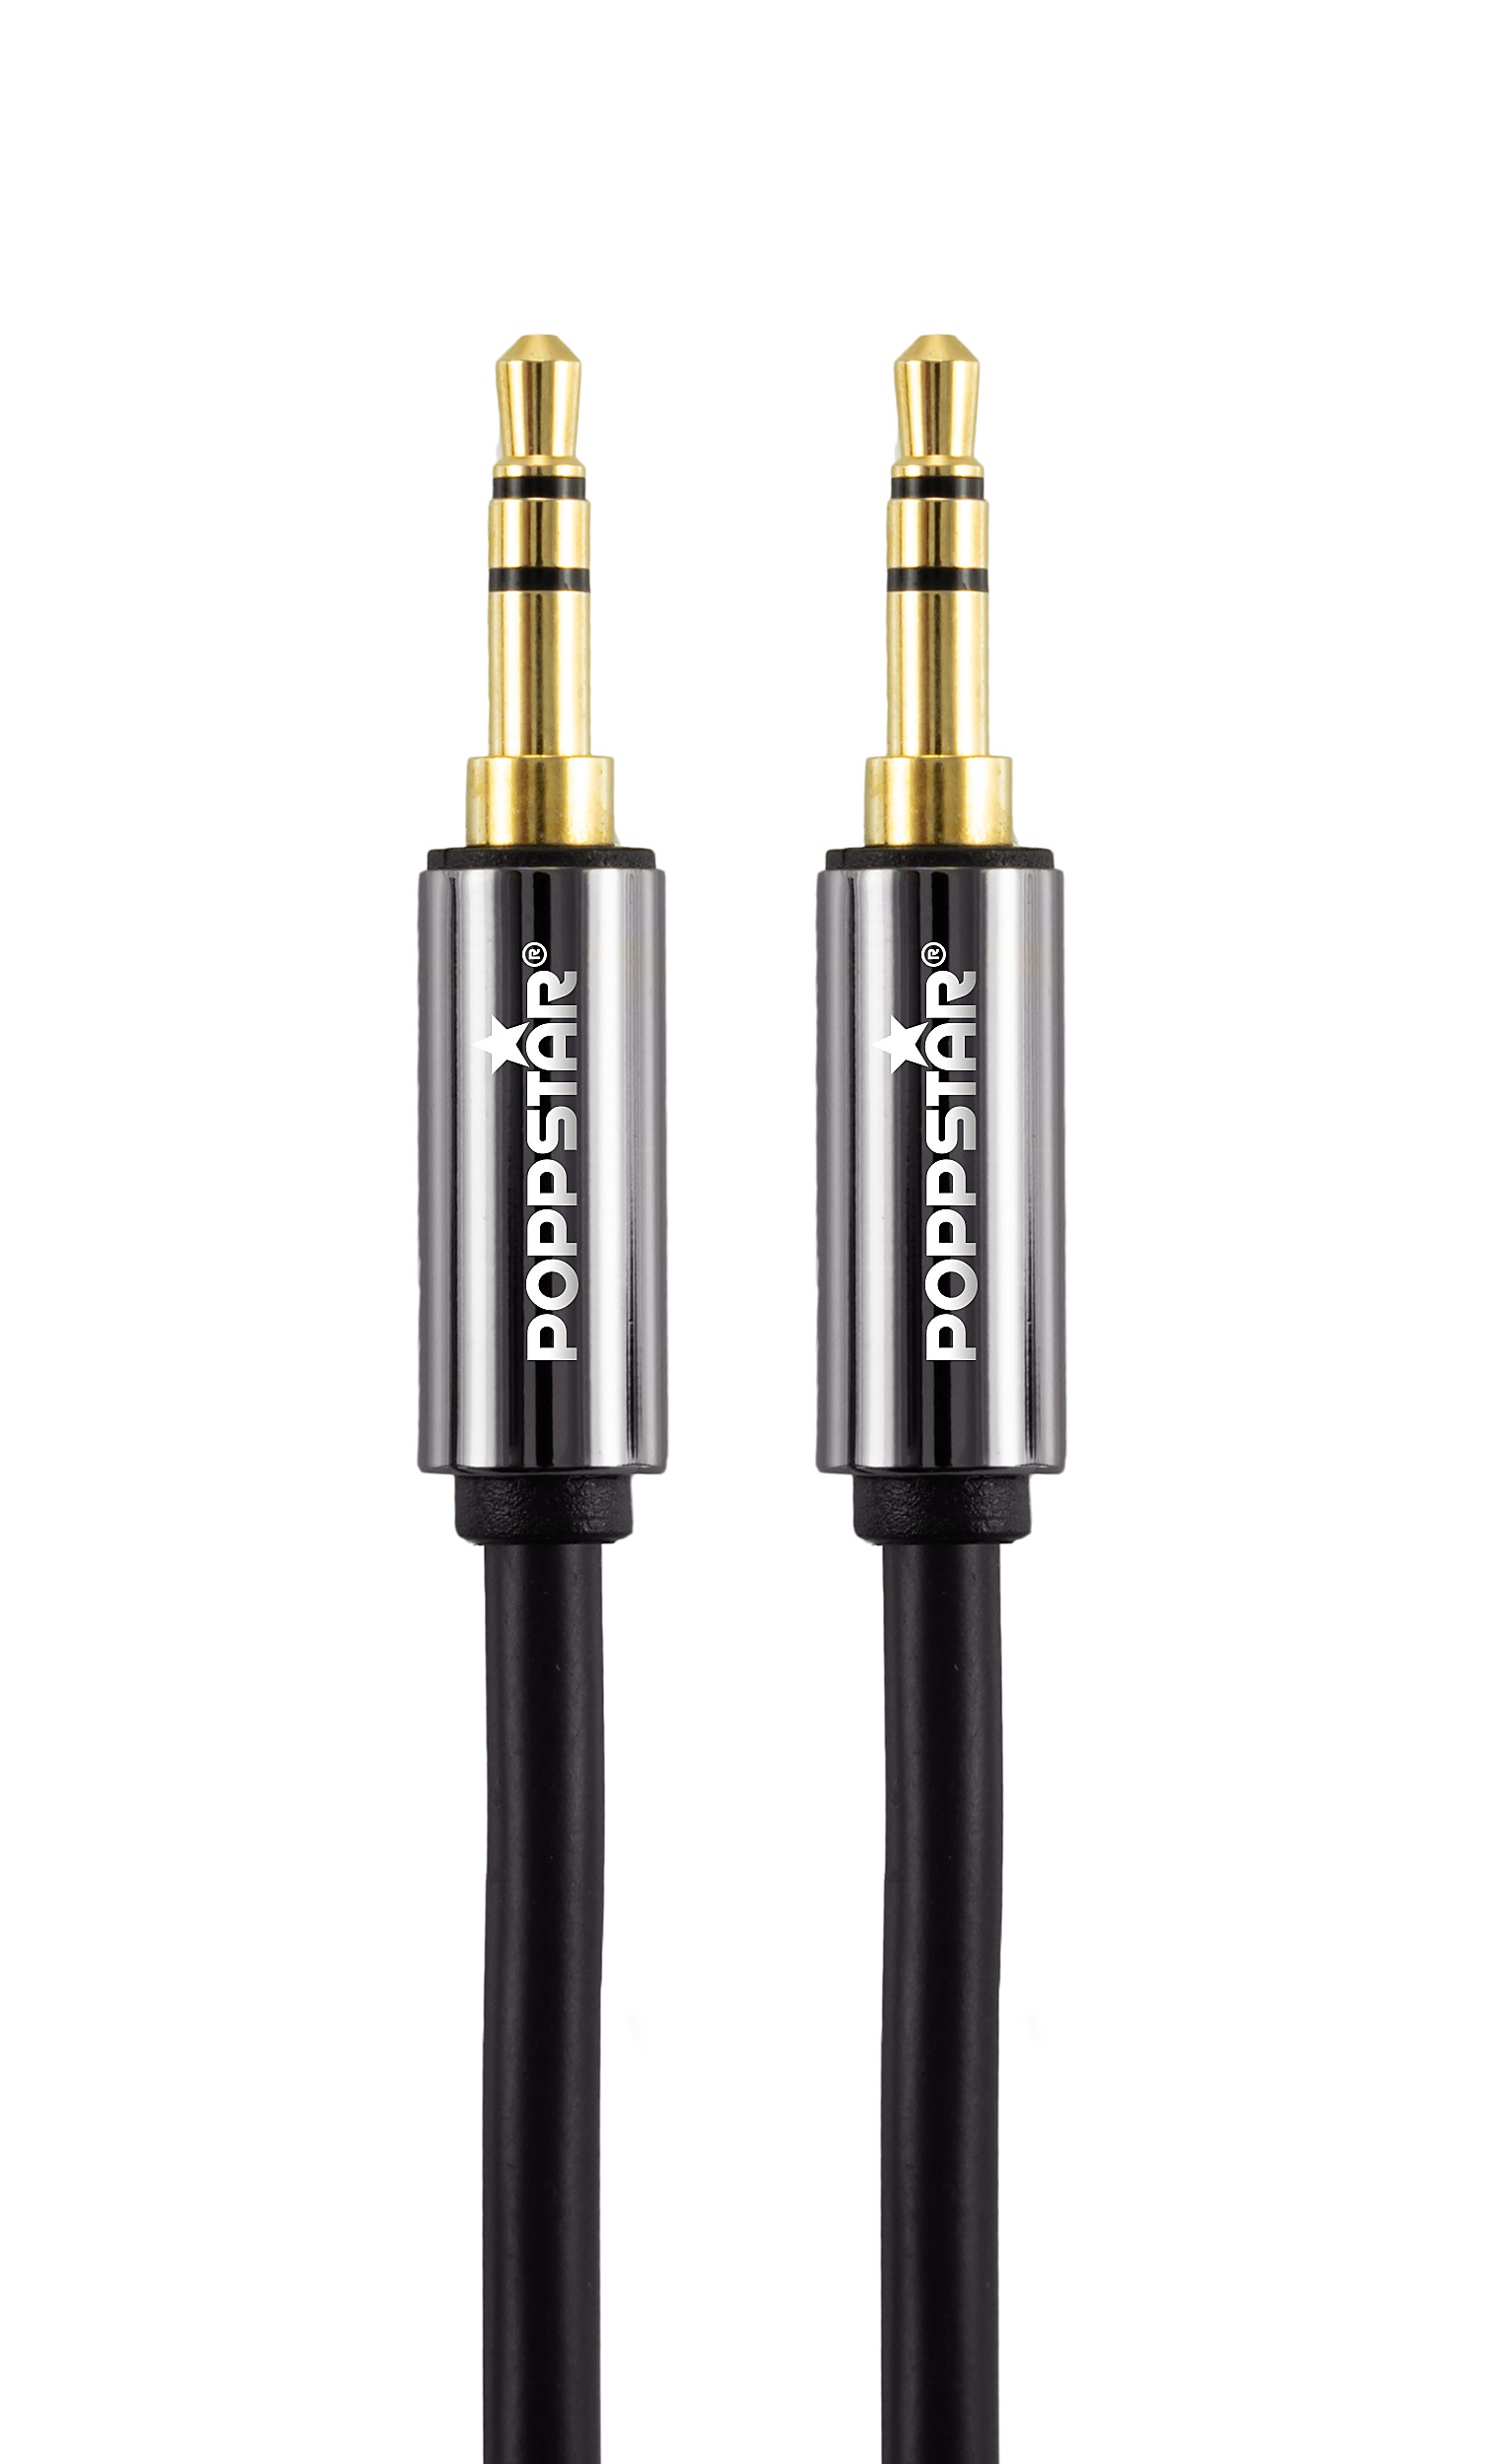 HQ Audio-Klinkenkabel 1 m mit Klinkenstecker 3,5 mm vergoldet